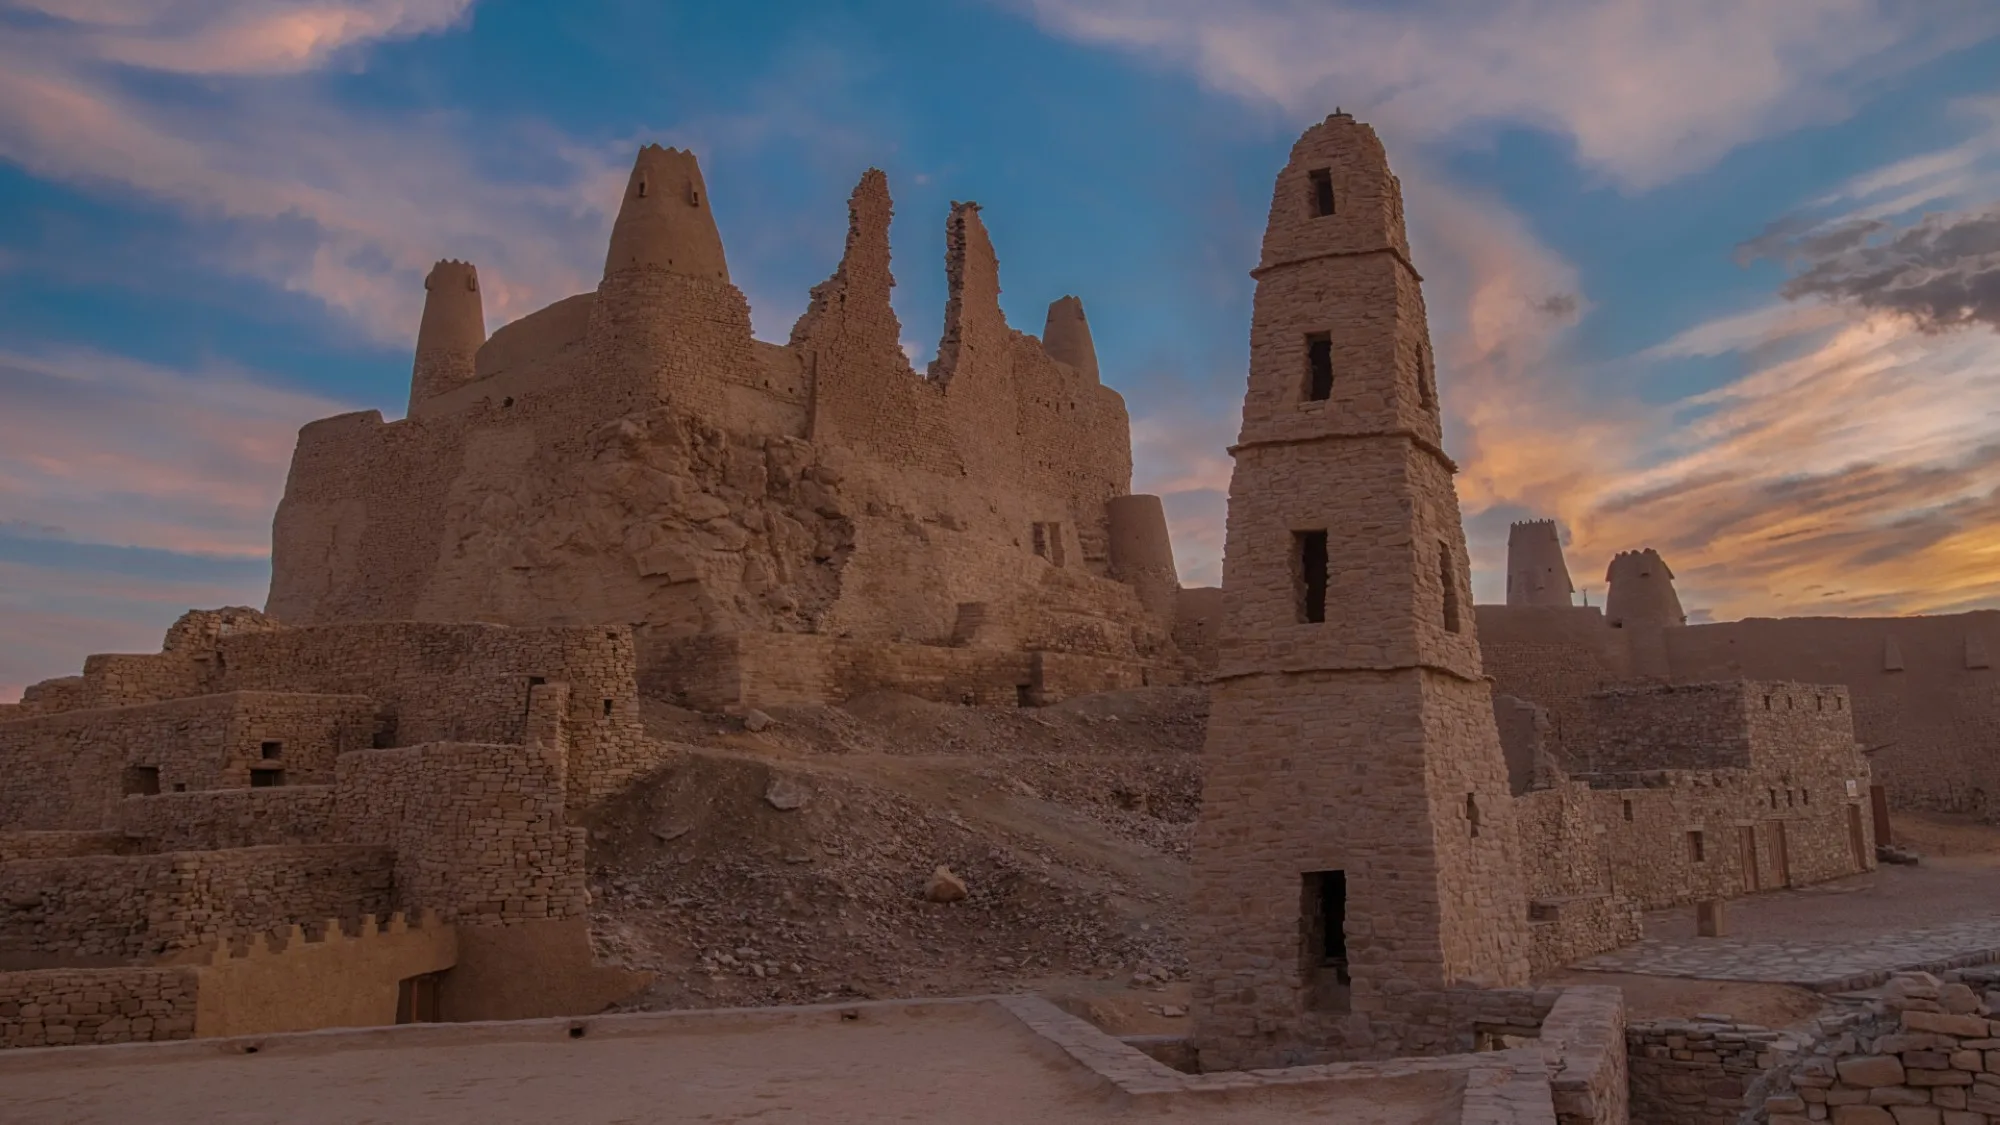 قلعة مارد: صرح شامخ يحكي حكاية حضارة عريقة في قلب المملكة العربية السعودية 